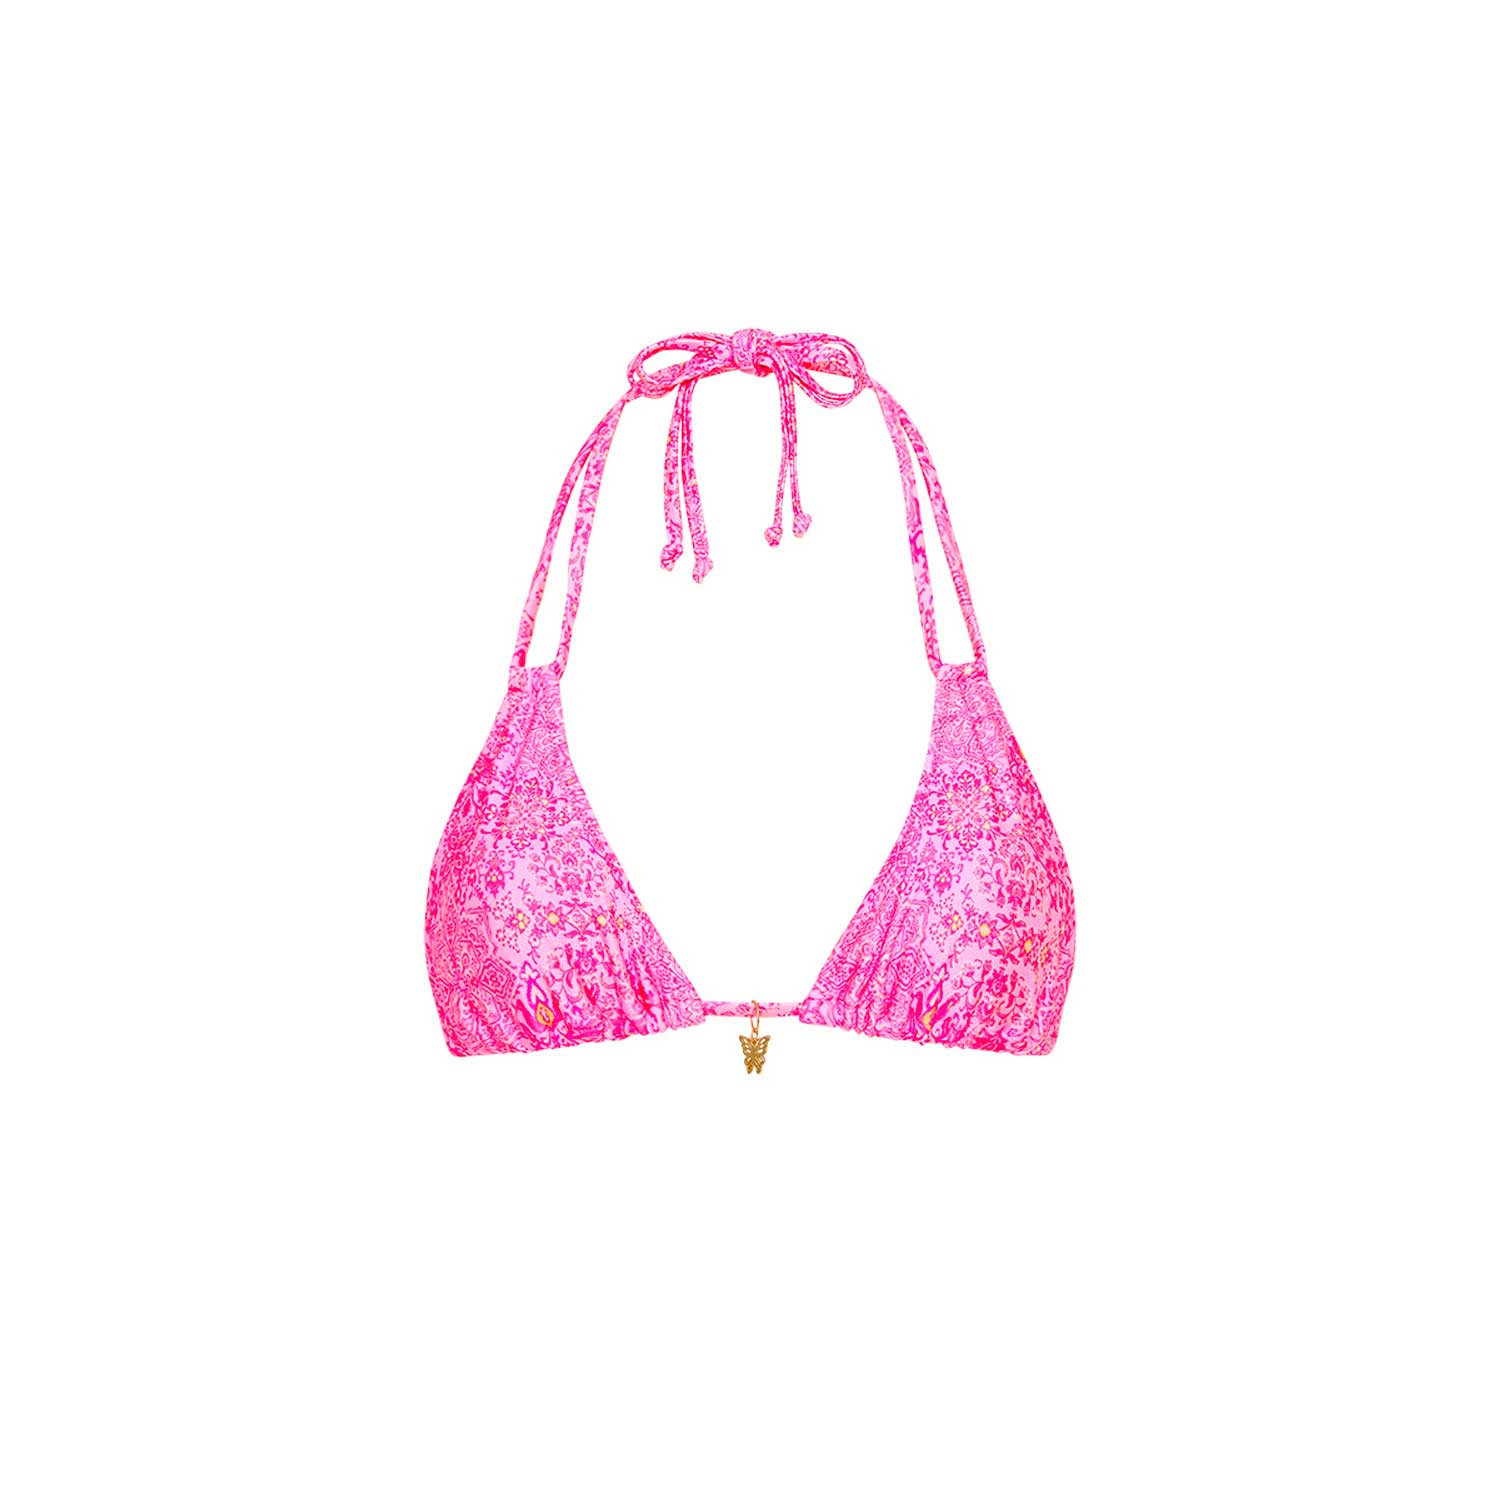 Kulain Kinis: Rose Quartz Halter Bralette Bikini Top